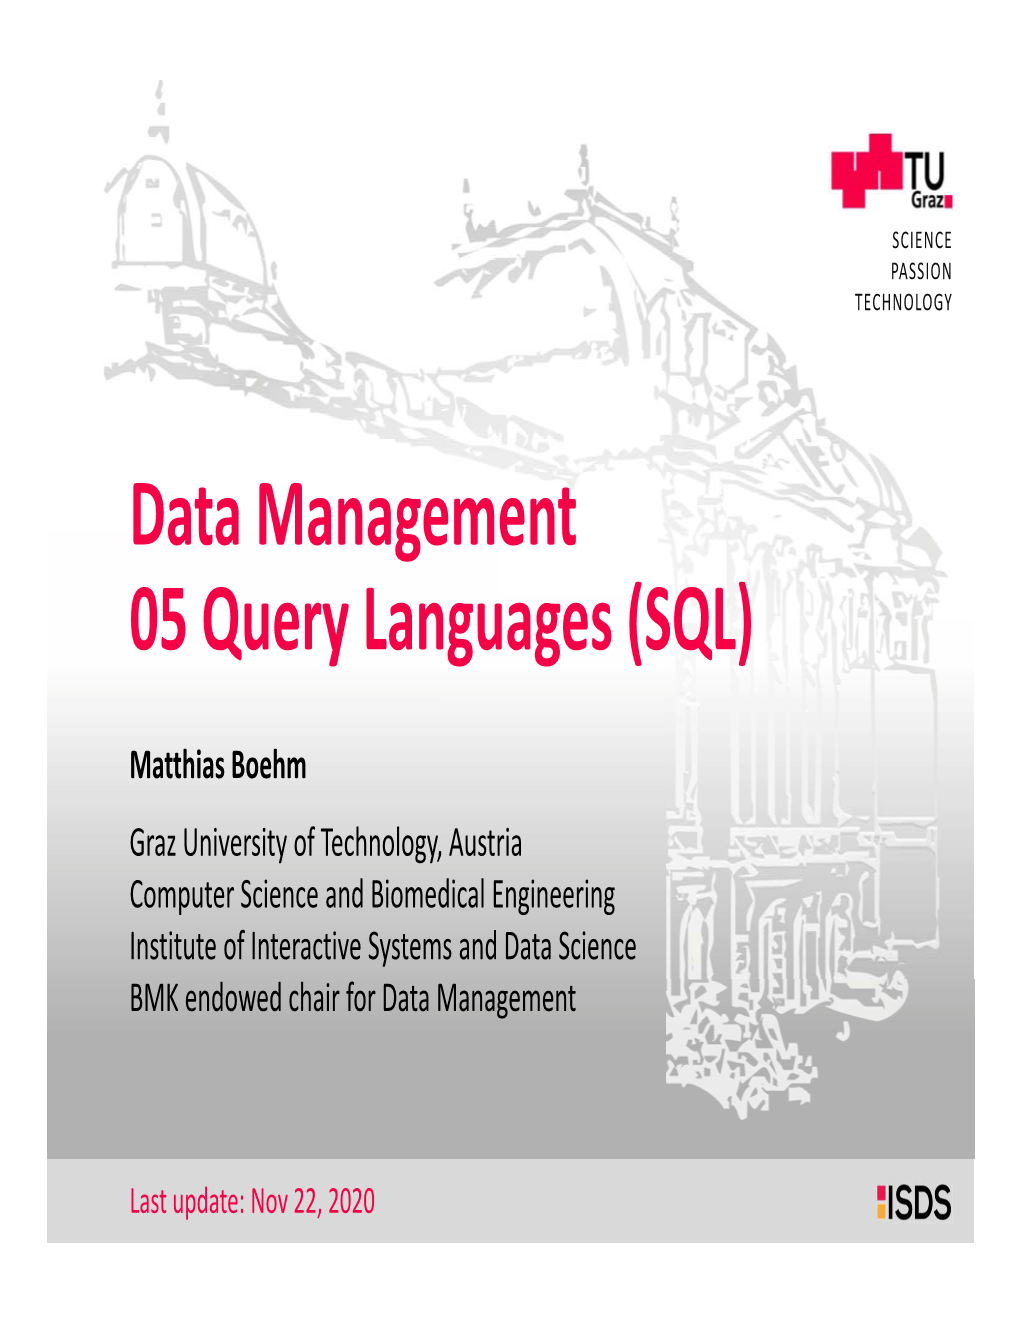 Data Management 05 Query Languages (SQL)